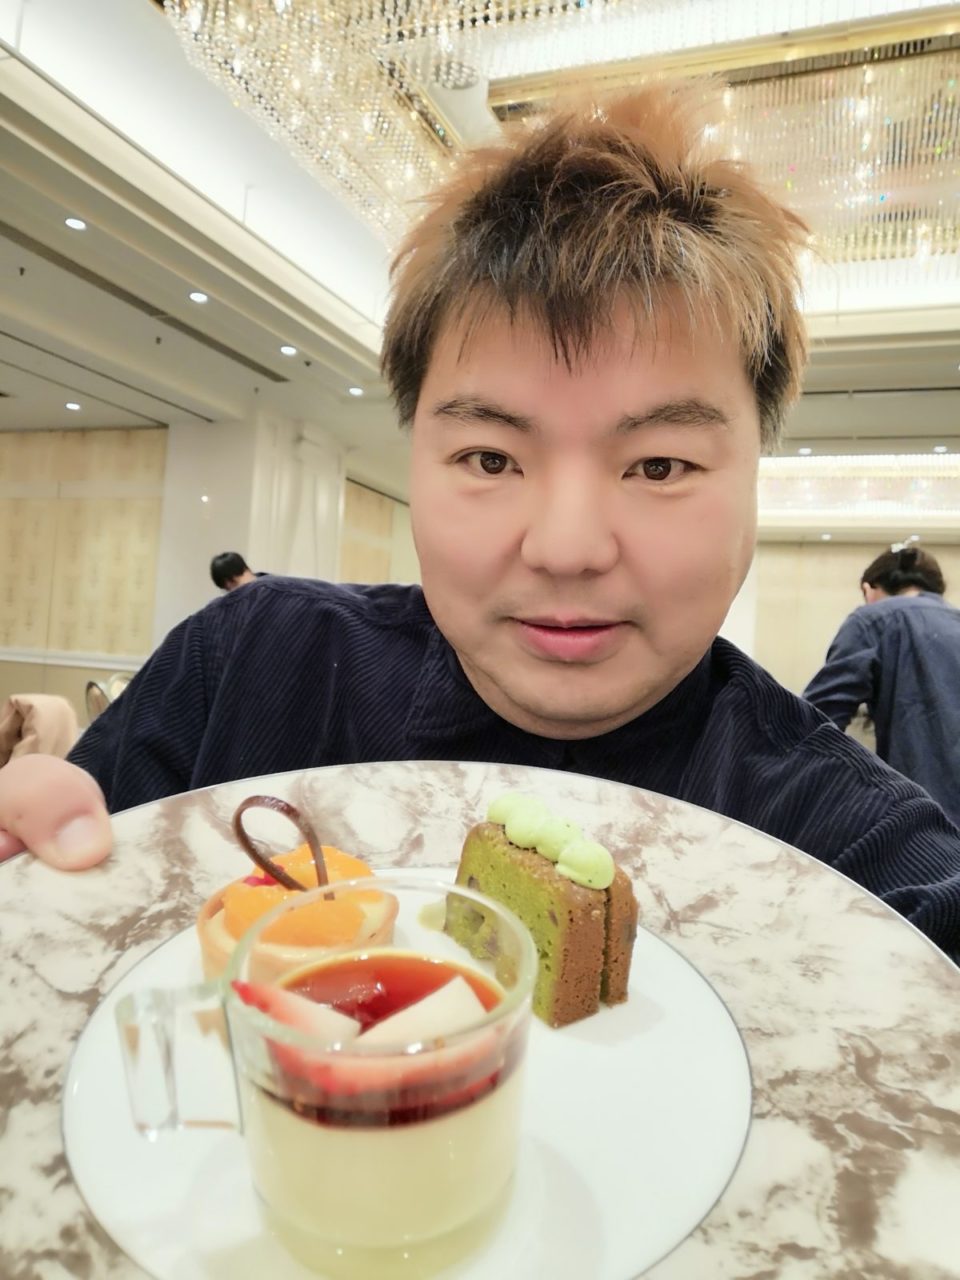 《命の贈り物》名古屋観光ホテルがSDGsに取り組む特別なイベント:3種類の地元食材のデザートプレートを楽しむ 2023年12月26日